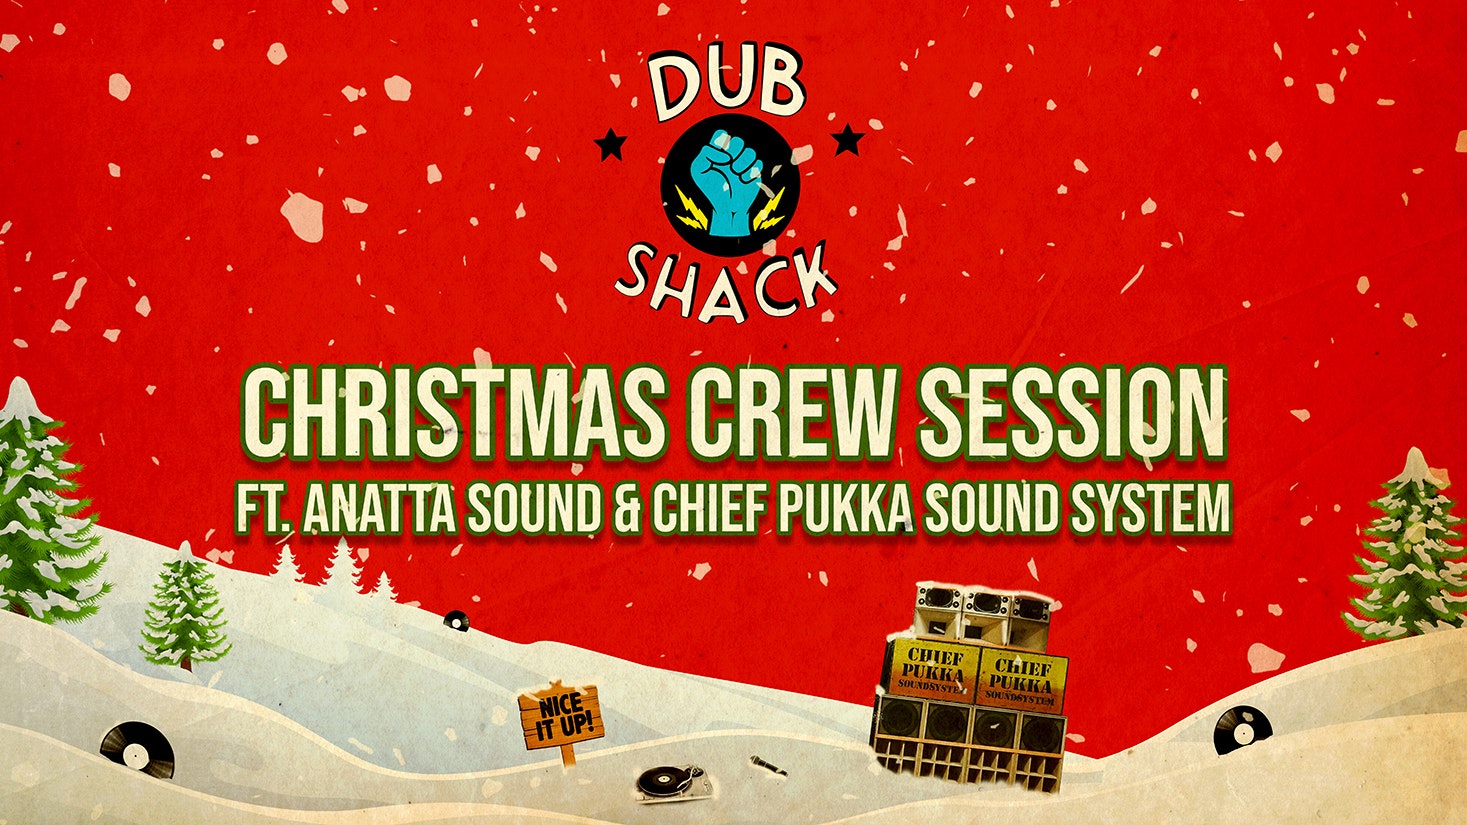 Dub Shack // Christmas Crew Session